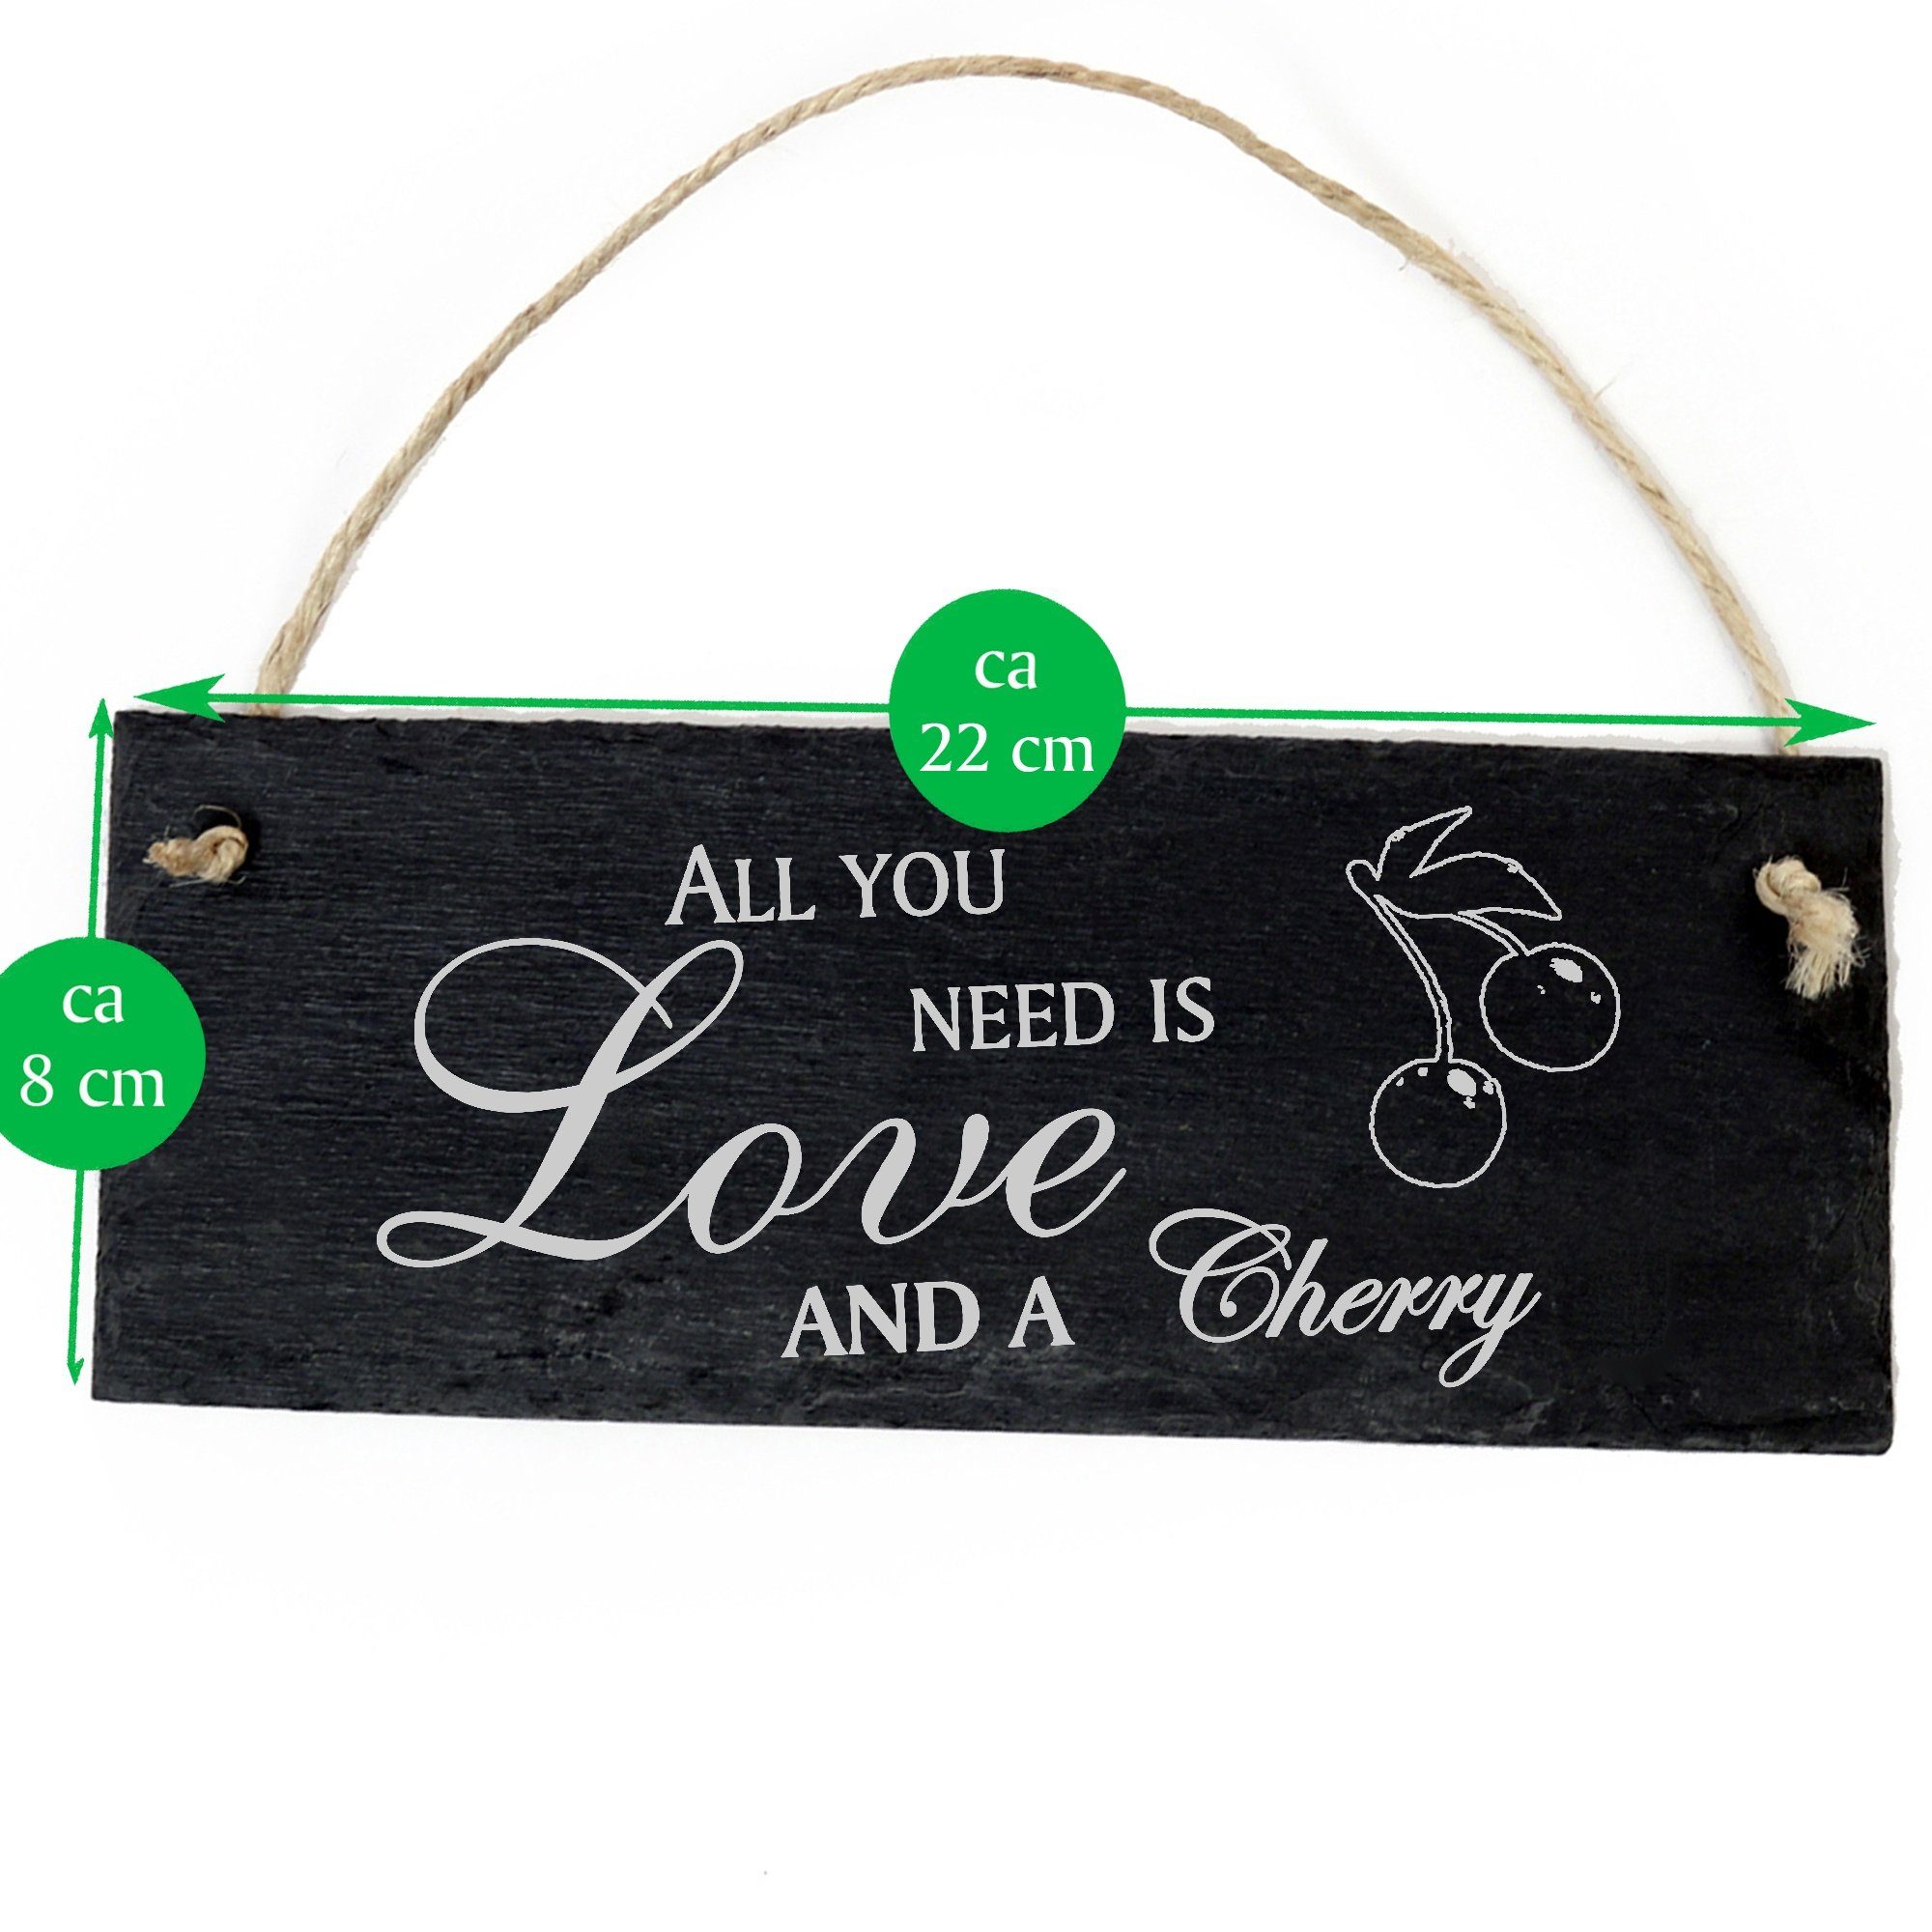 Dekolando Hängedekoration Kirsche 22x8cm need All a Love and Cherry you is